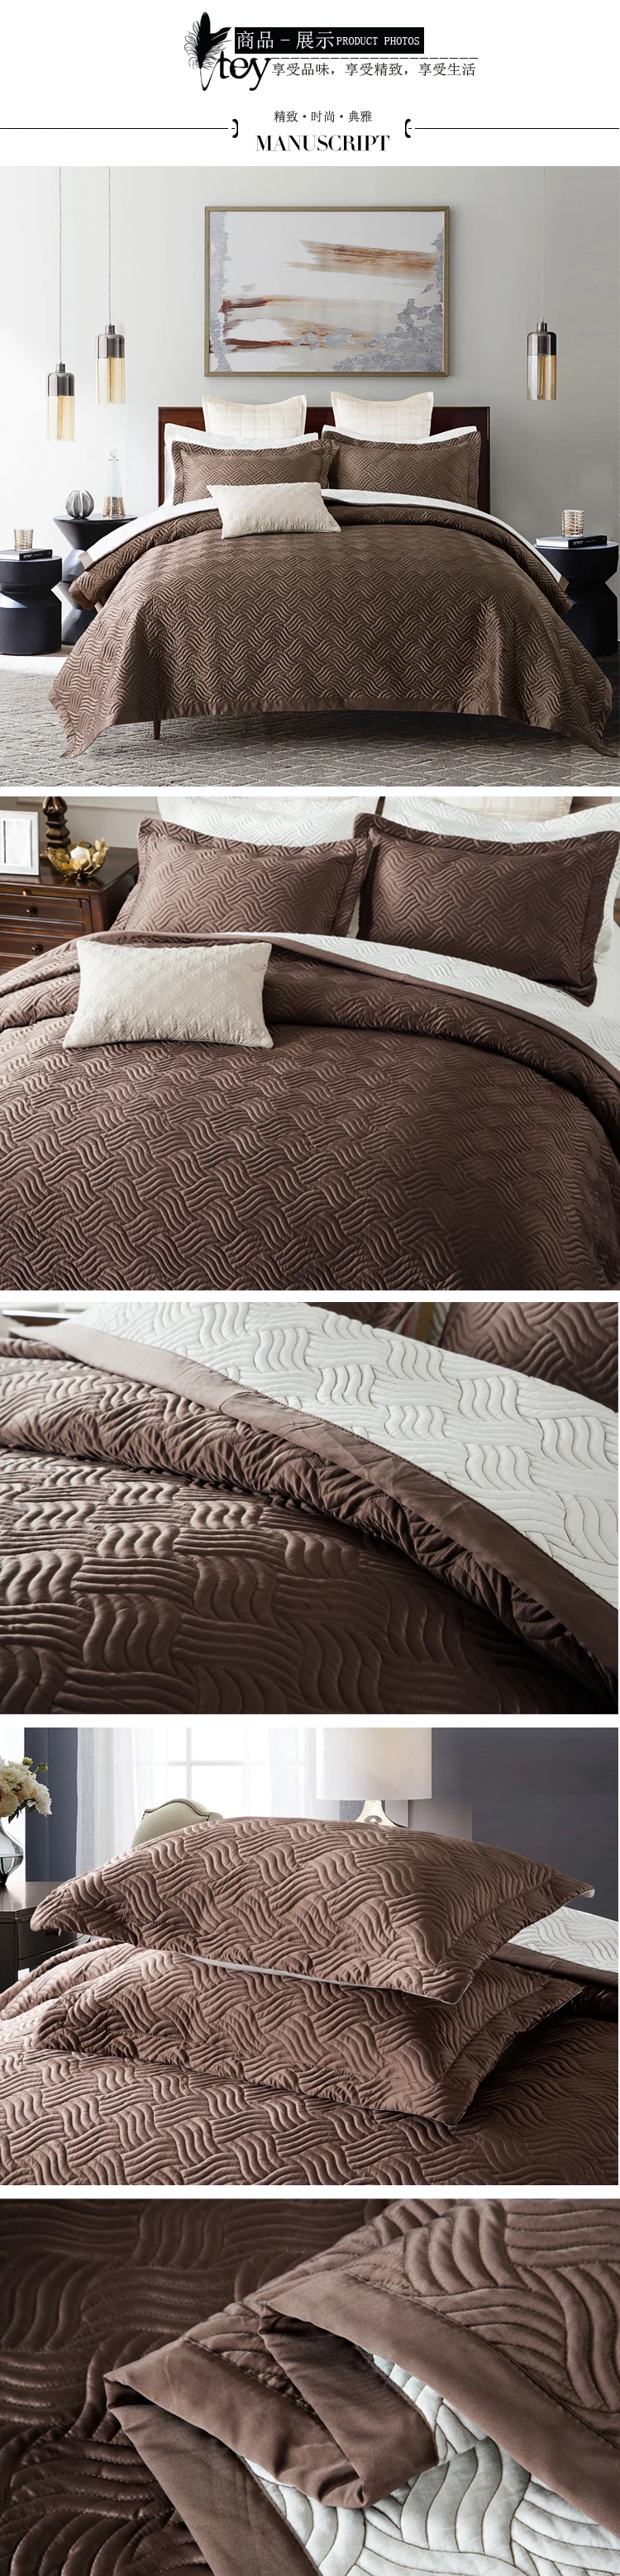 Итальянское Роскошное хлопковое Летнее шелковое стеганое одеяло, комплекты из 3 предметов, превосходный размер, качественное одеяло, покрывало на кровать золотистого цвета, покрывало, стеганое одеяло, s